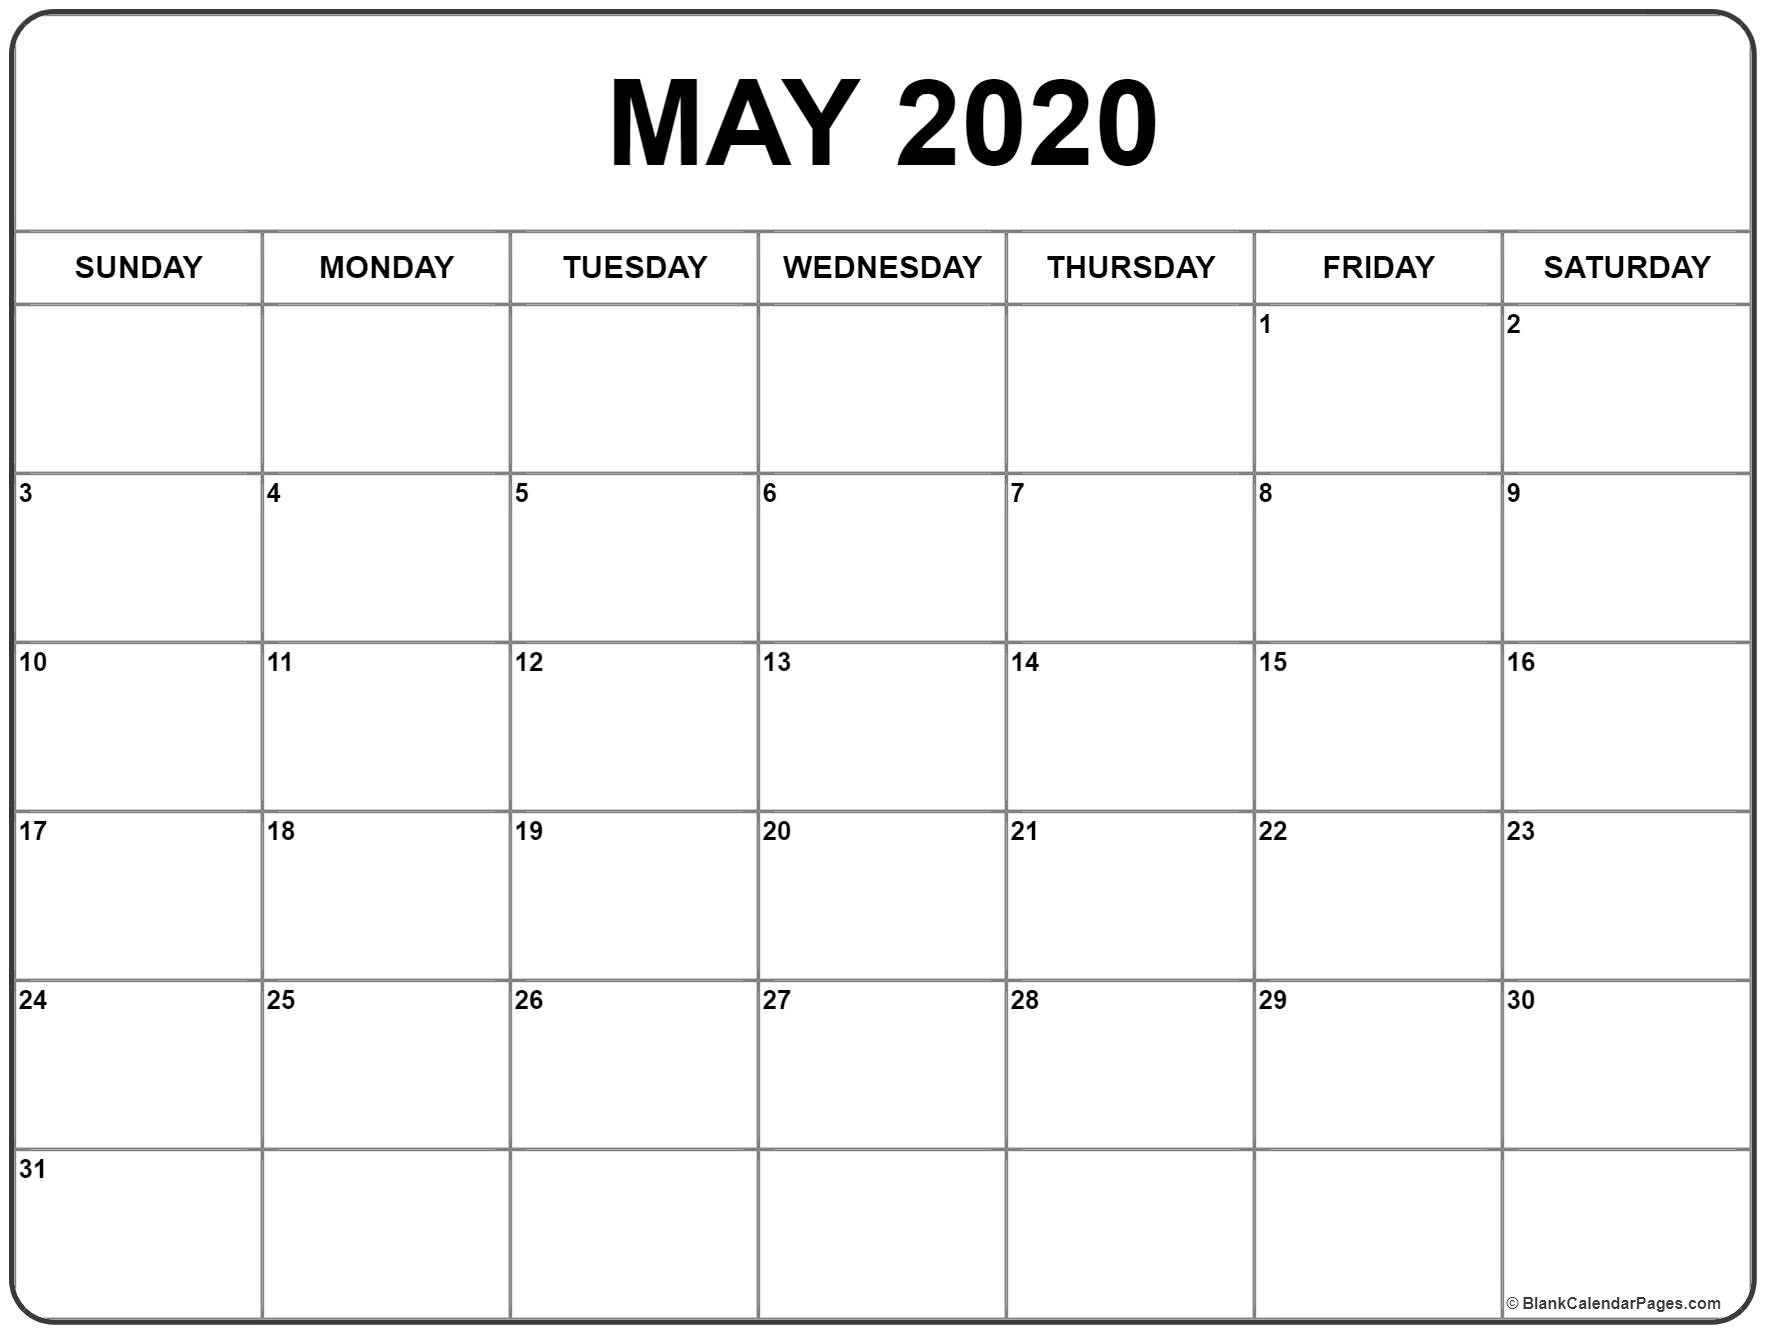 CAL=May 2020 calendar